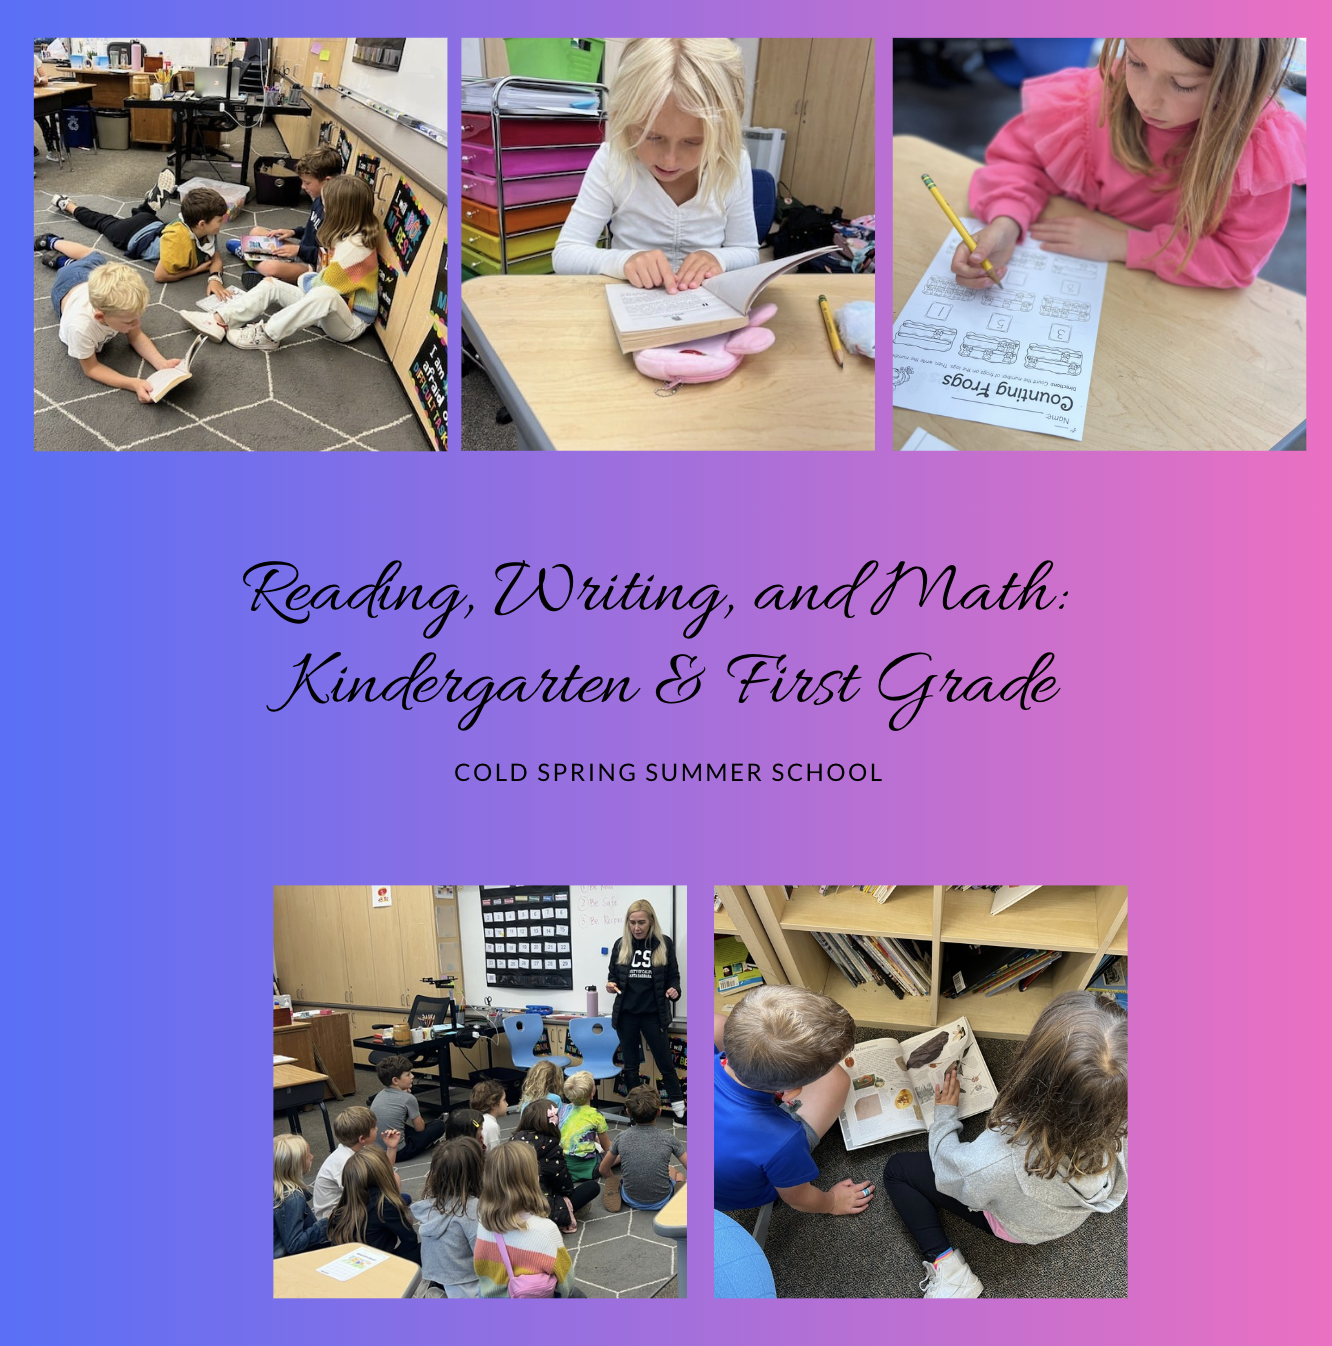 Kindergarten & 1st Grade: Reading, Writing, & Math